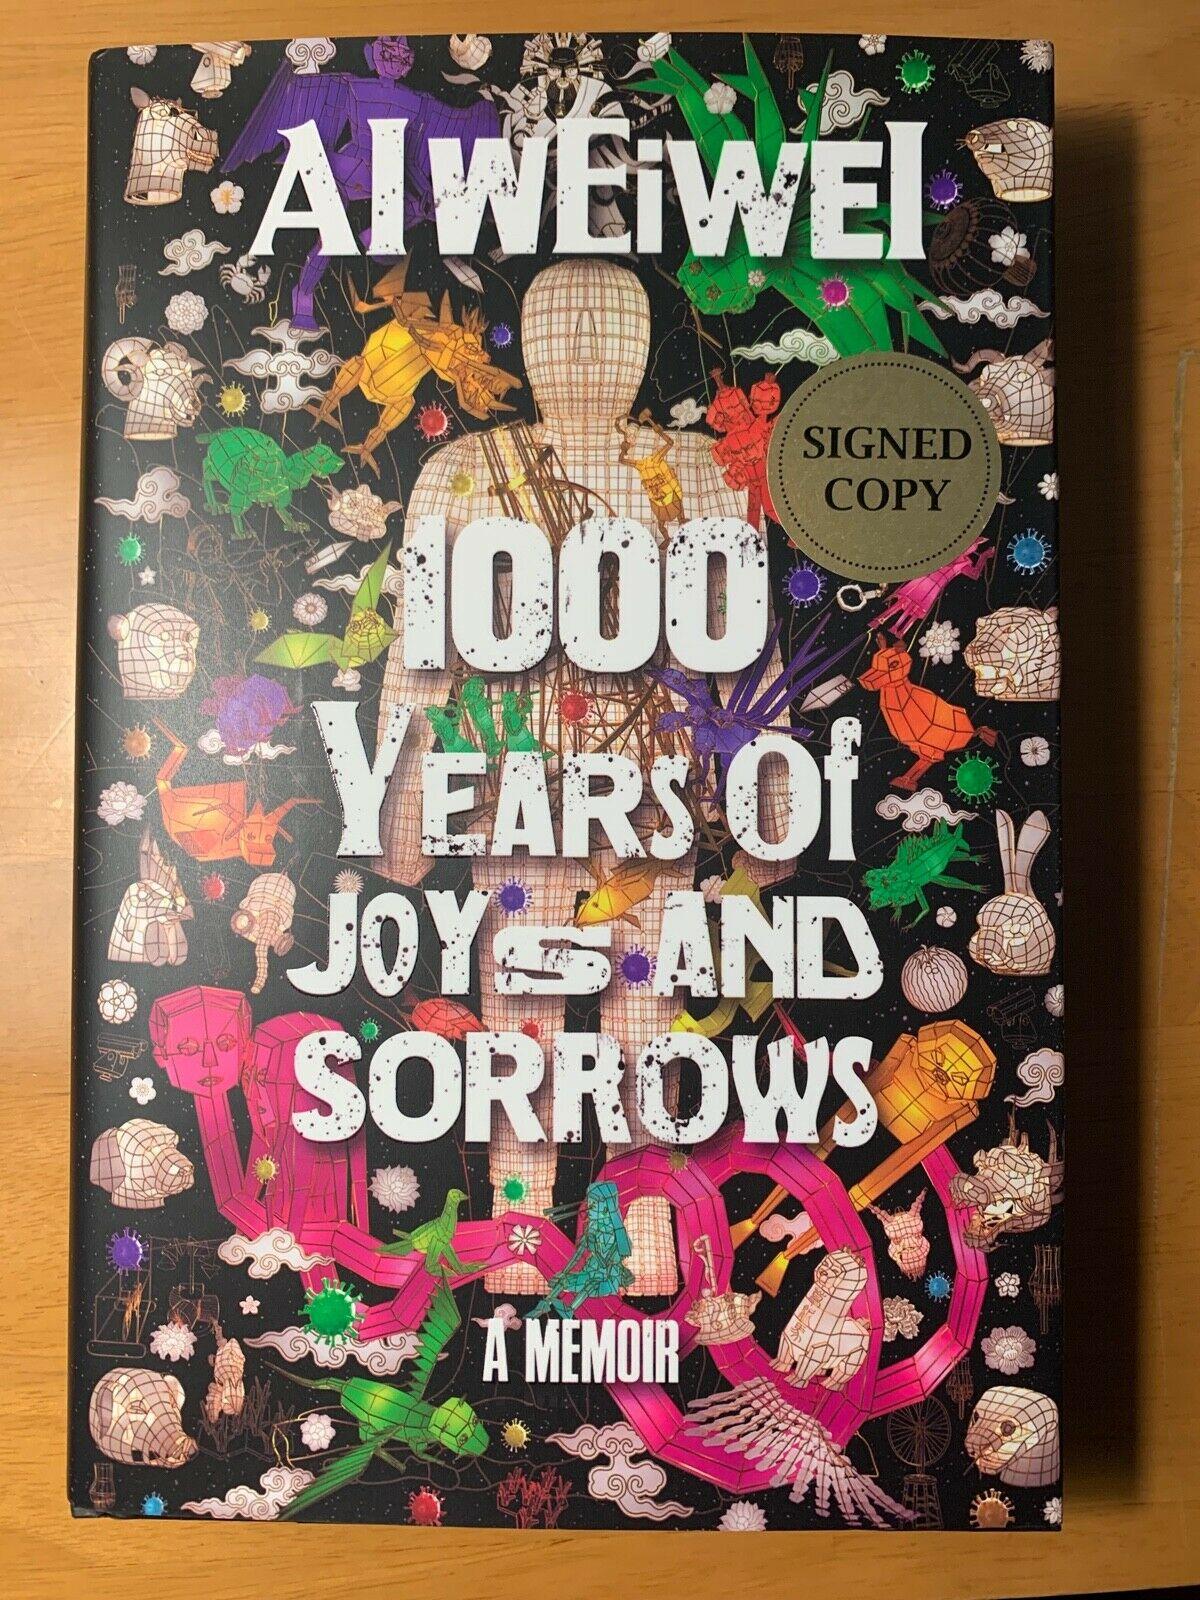 Première édition 1000 Years of Joys and Sorrows (1000 ans de joies et de douleurs) signée par Ai weiwei - Print de Ai Weiwei